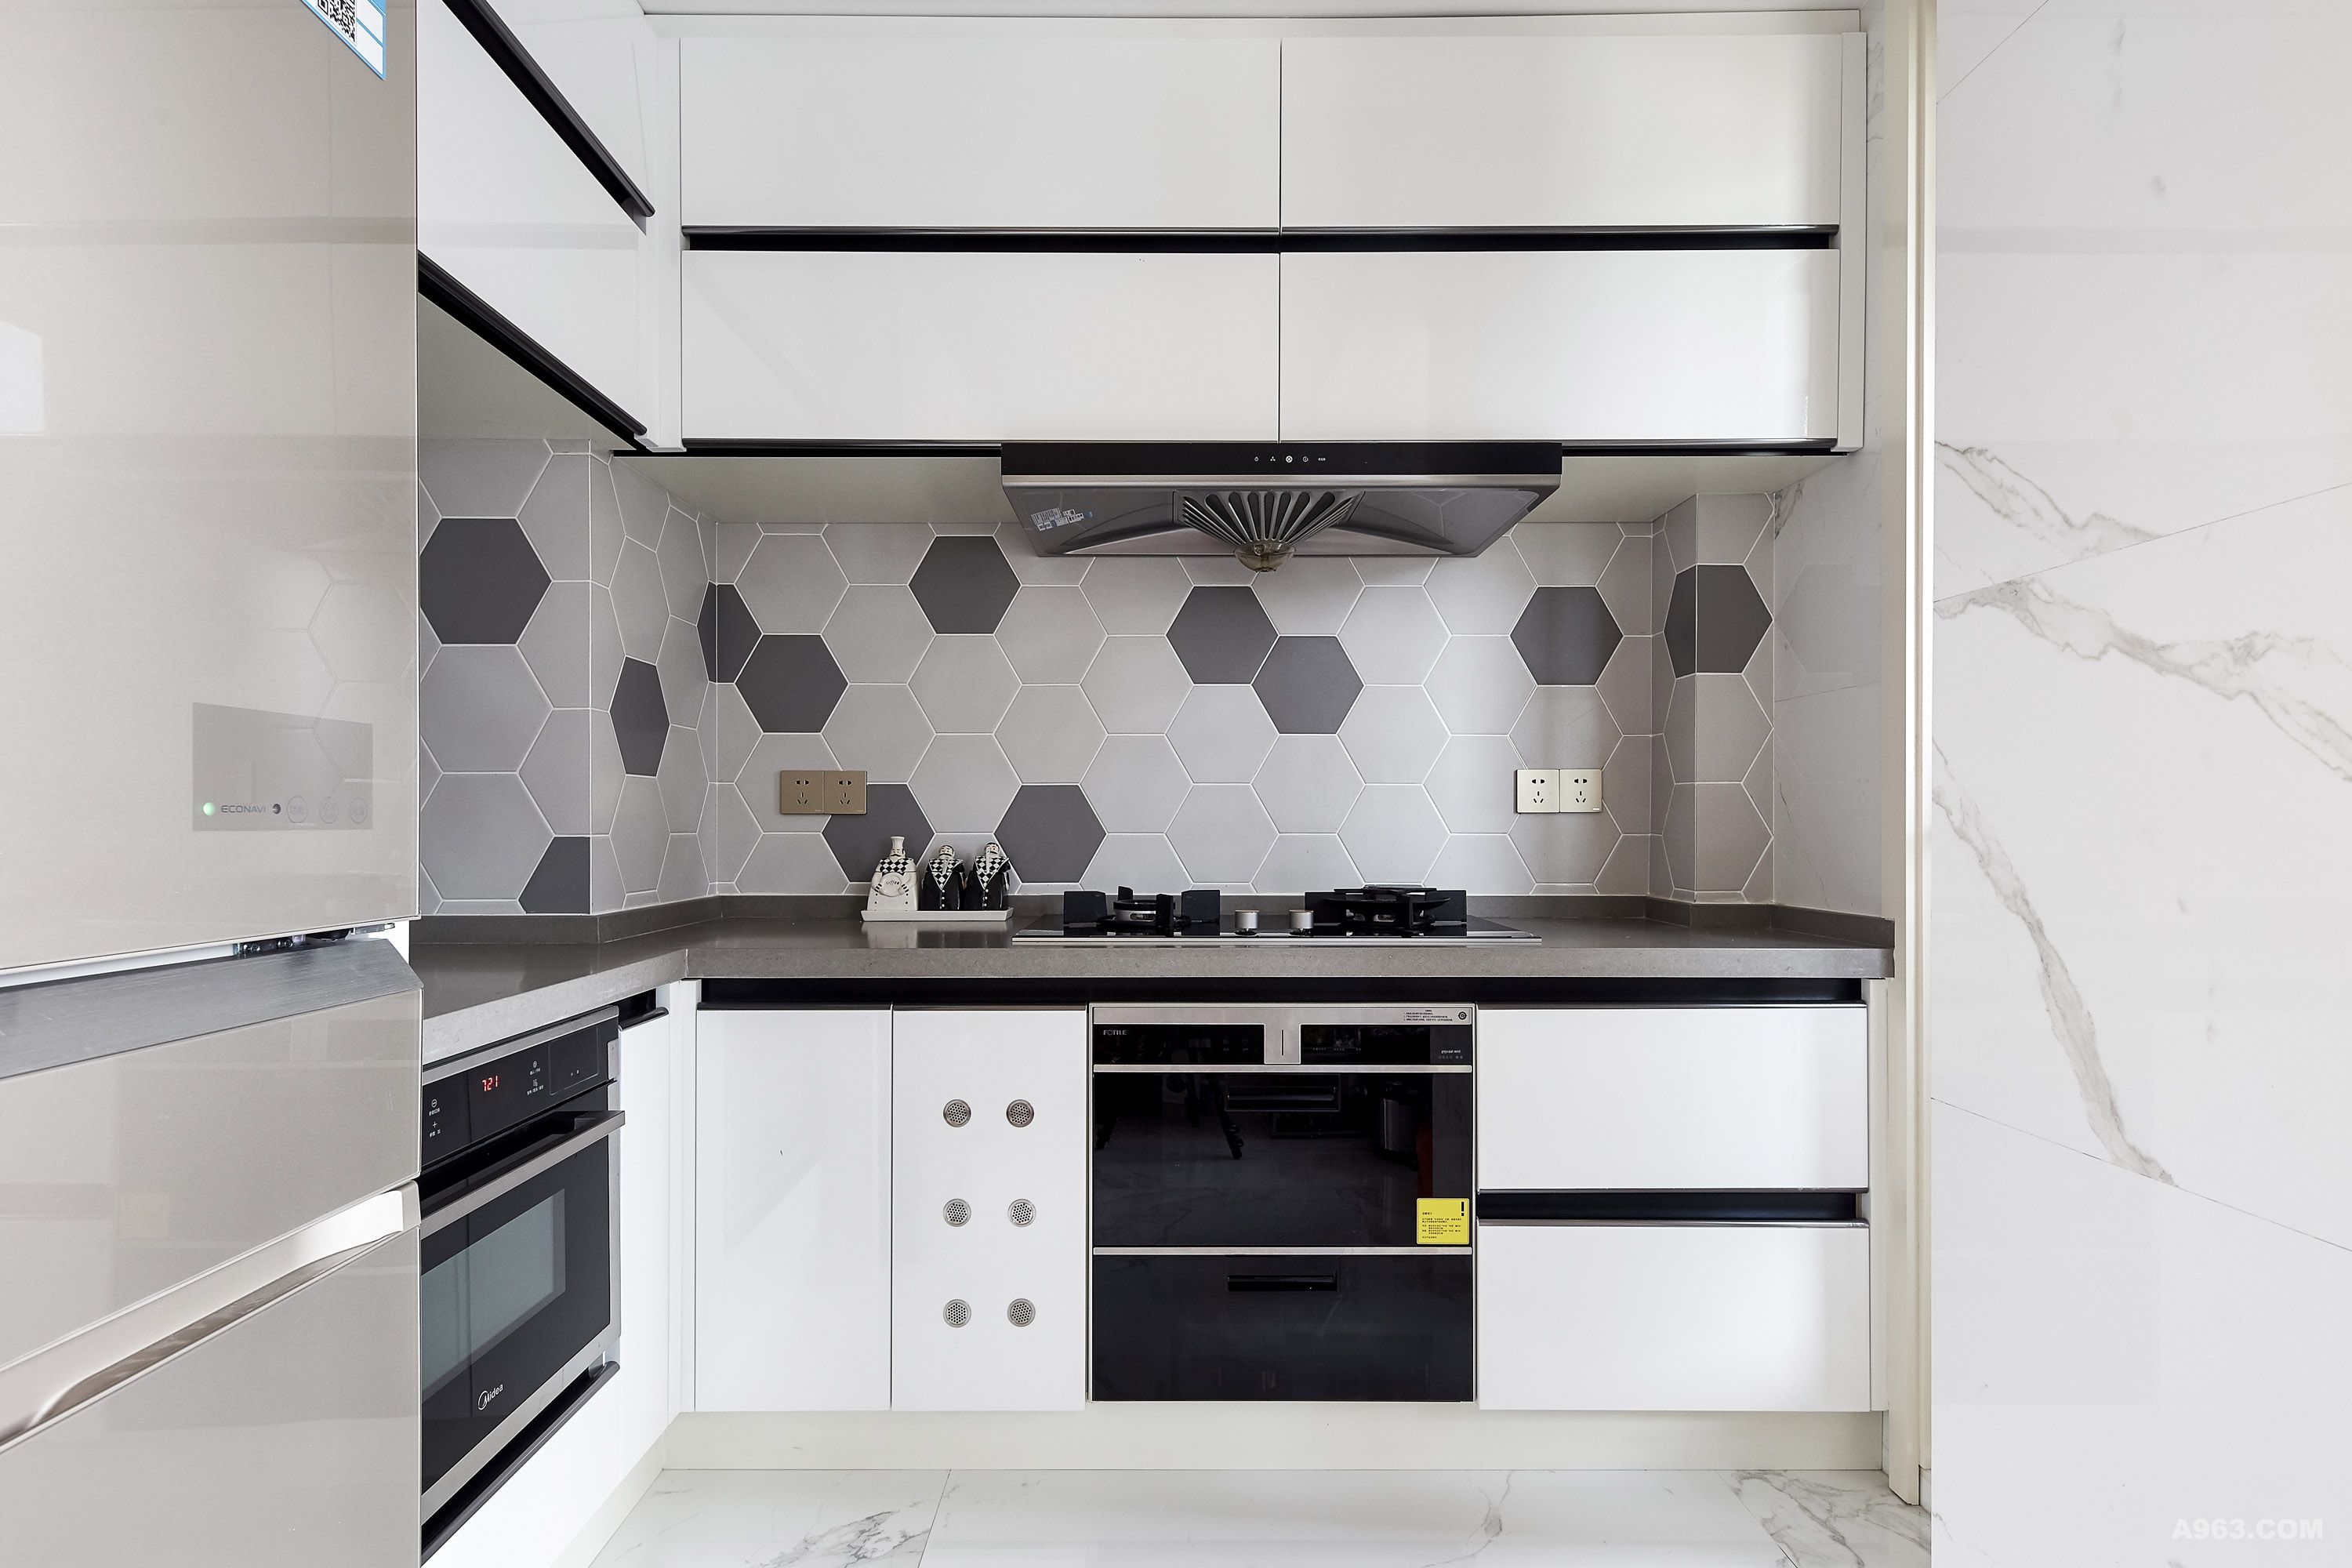 厨房 | Kitchen
厨房采用黑白灰三色，墙面以不规则瓷砖拼贴，呈现出多层次性。经典黑白色橱柜，打造现代质感，橱柜强大的收纳功能，将厨具隐藏于橱柜内，释放出清爽台面，带来简洁的明快感。
